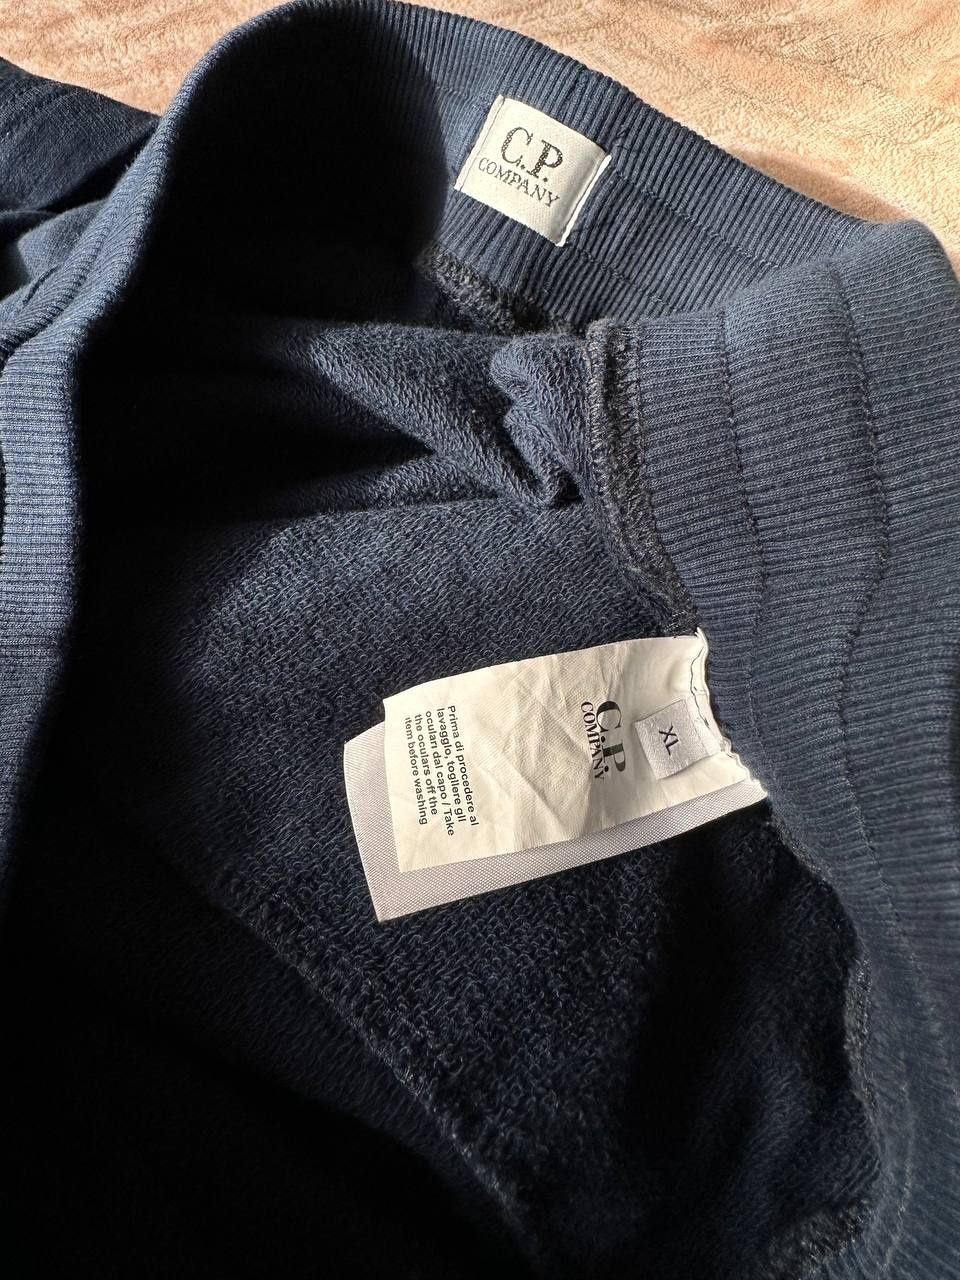 Синие мужские шорты от C.P Company, размер XL (подойдут на L)
Цена 25